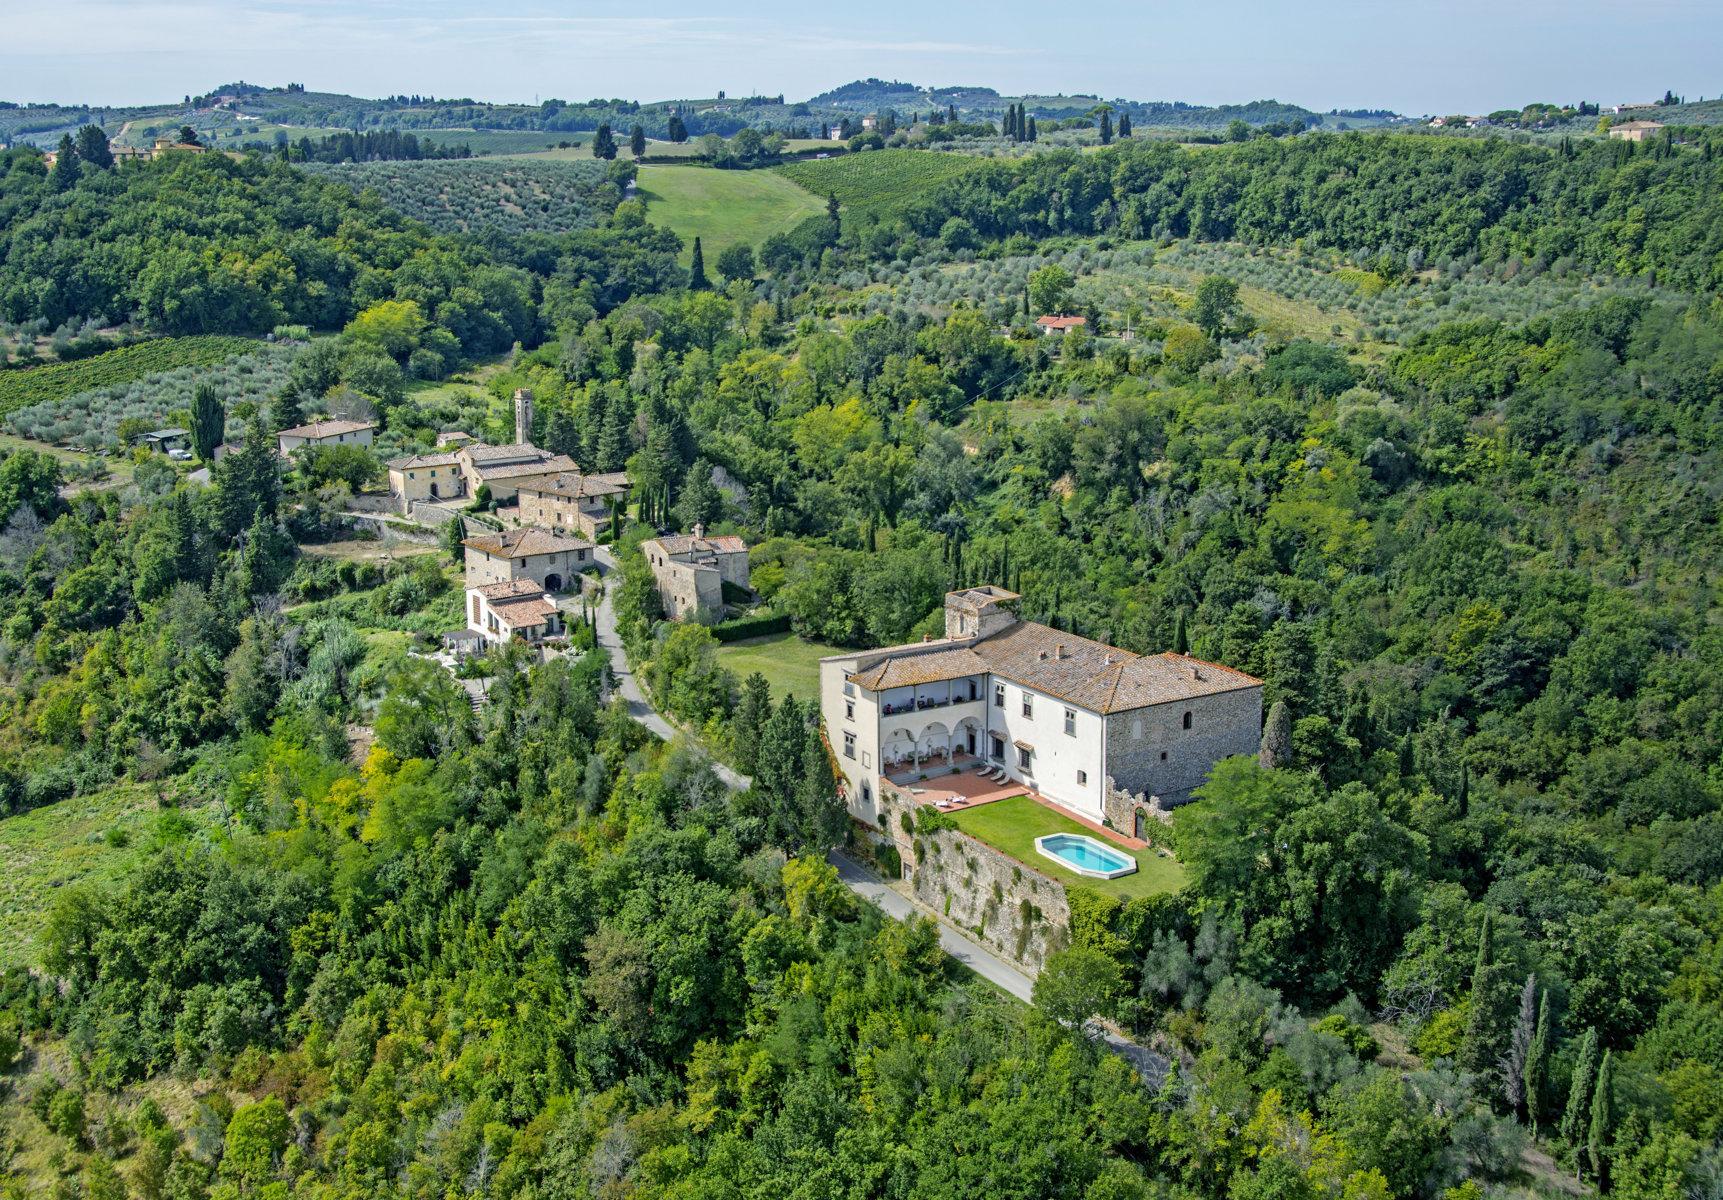 Renaissance castle in the Florentine Chianti hills - 30